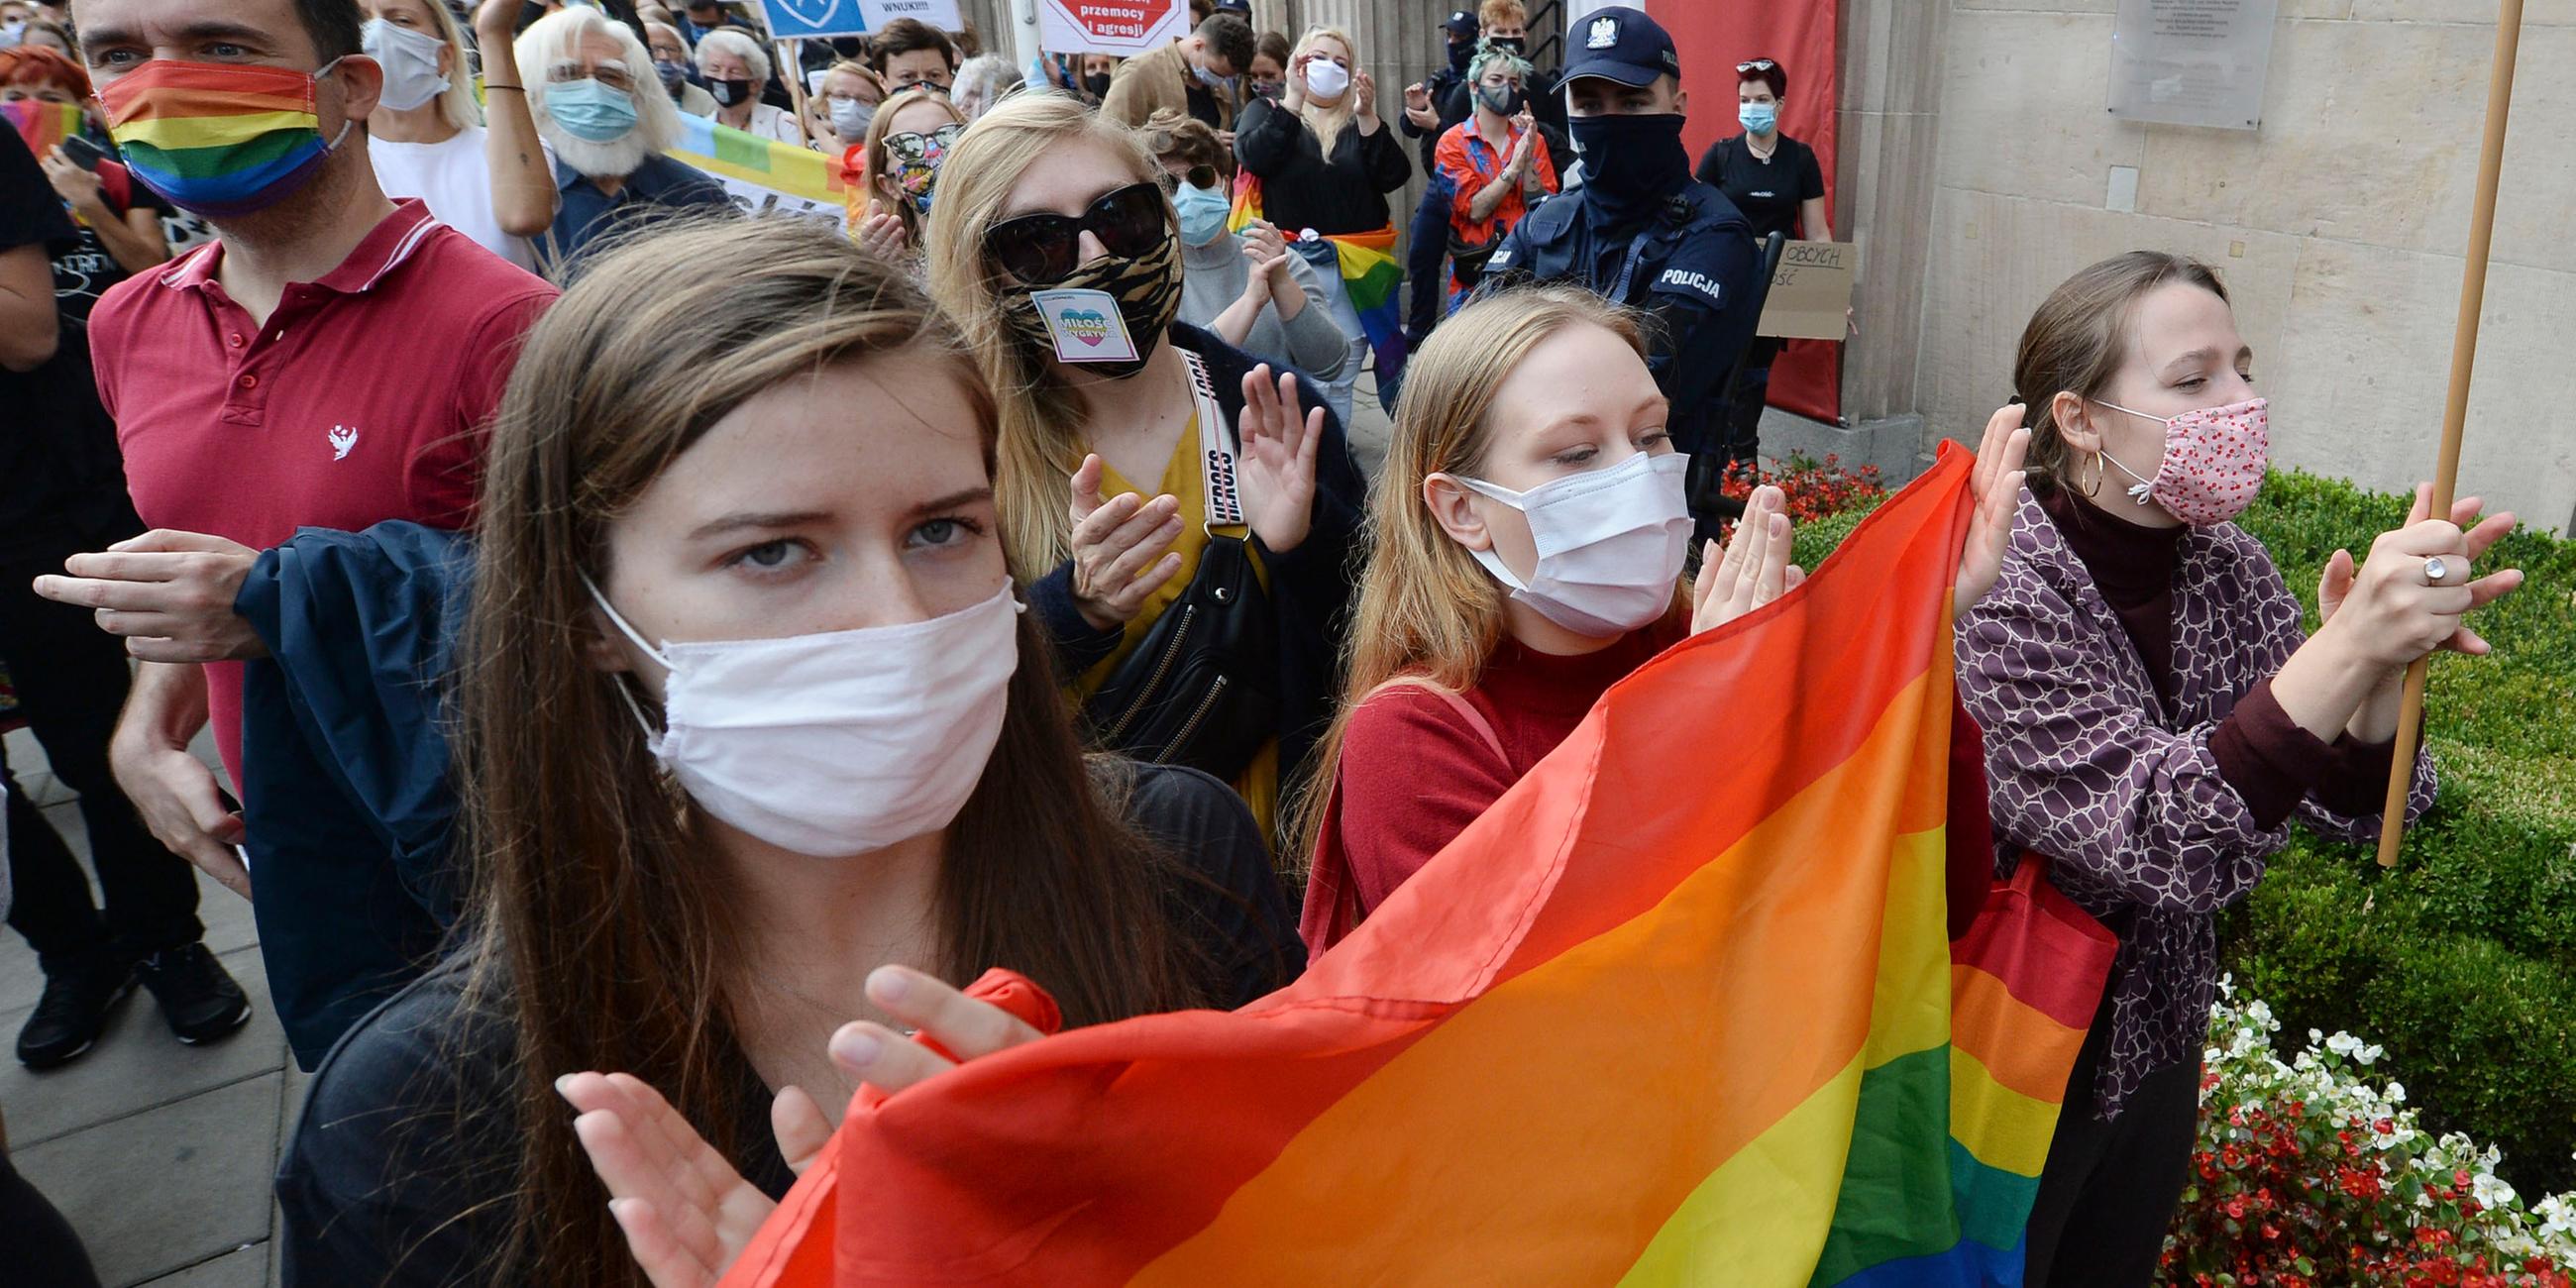 Demo der LGBTQ+-Community in Warschau, Polen